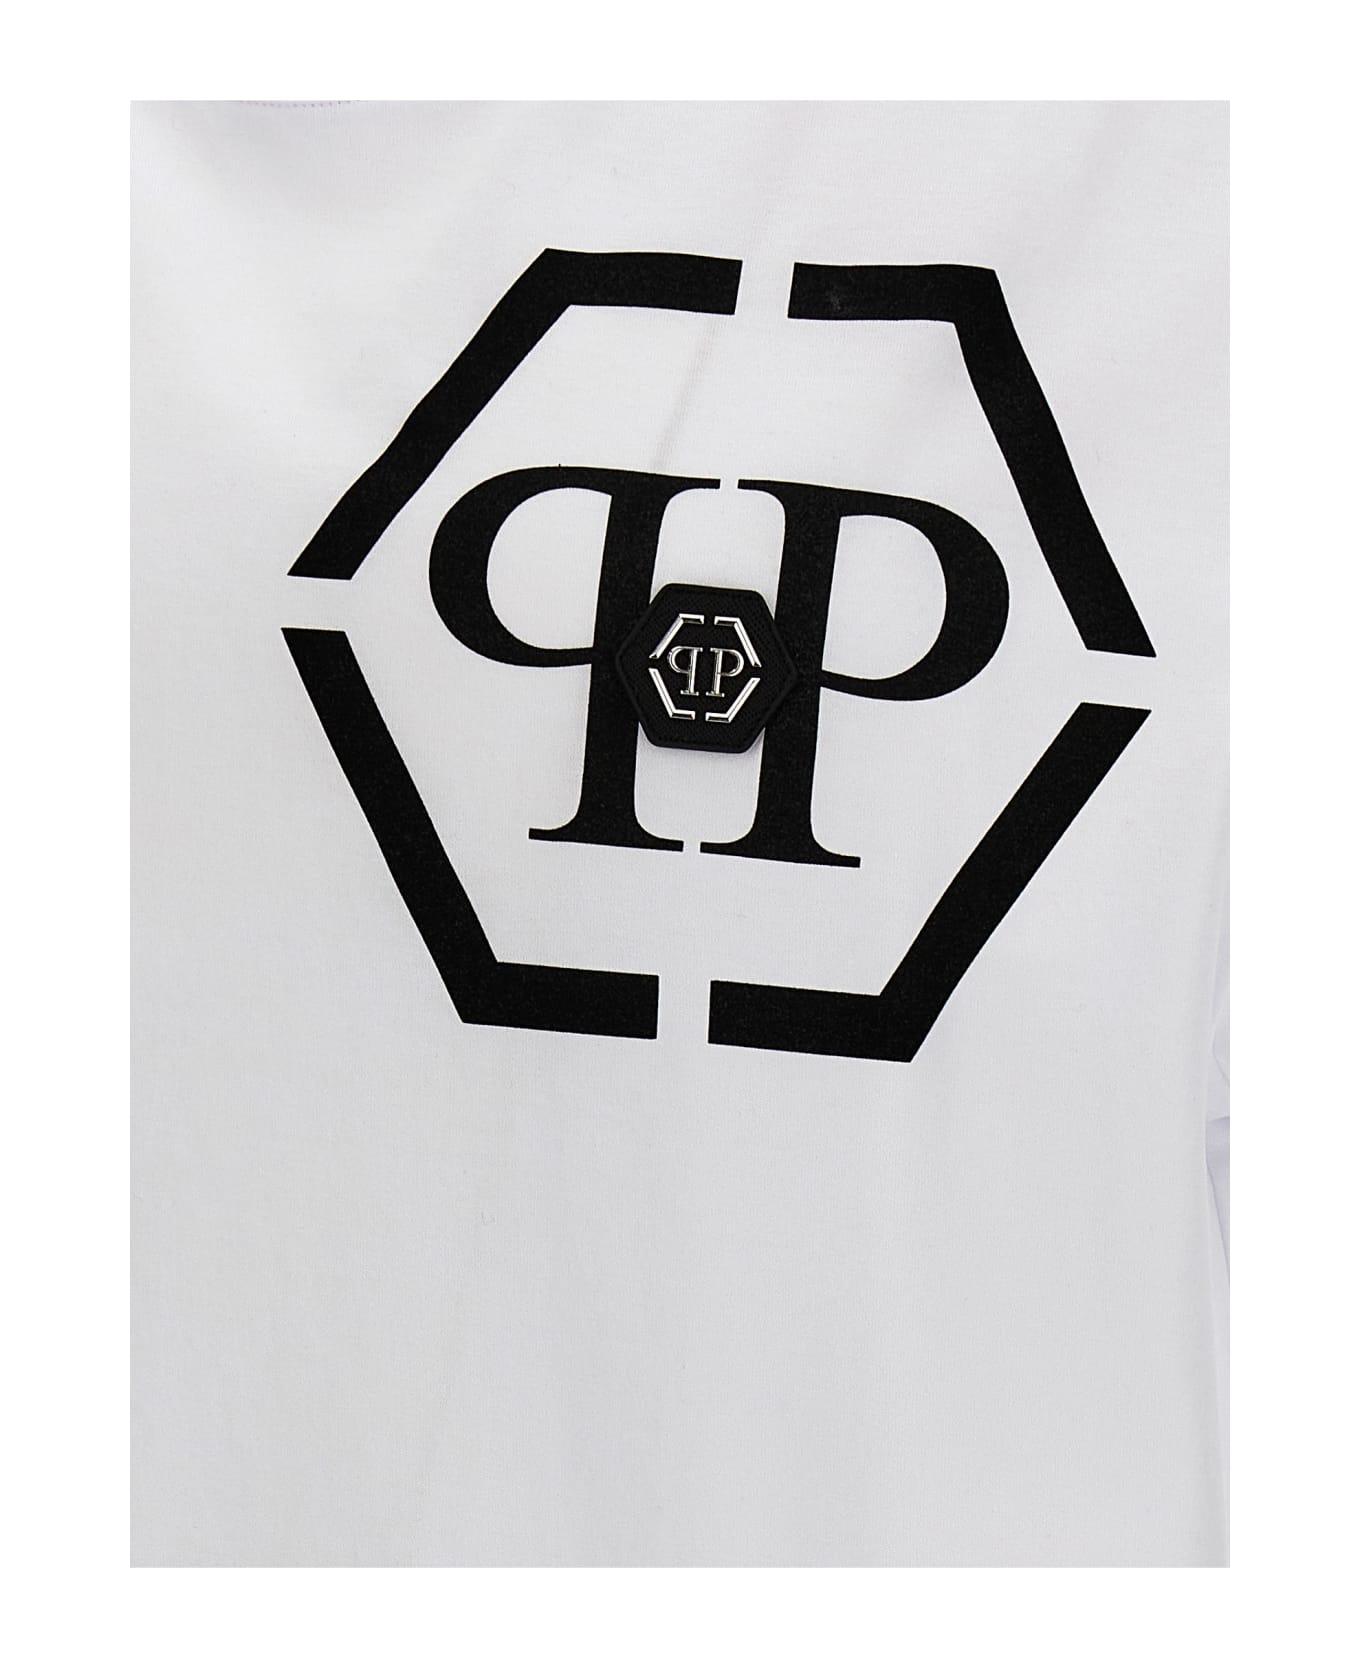 Philipp Plein Logo T-shirt - White/Black シャツ